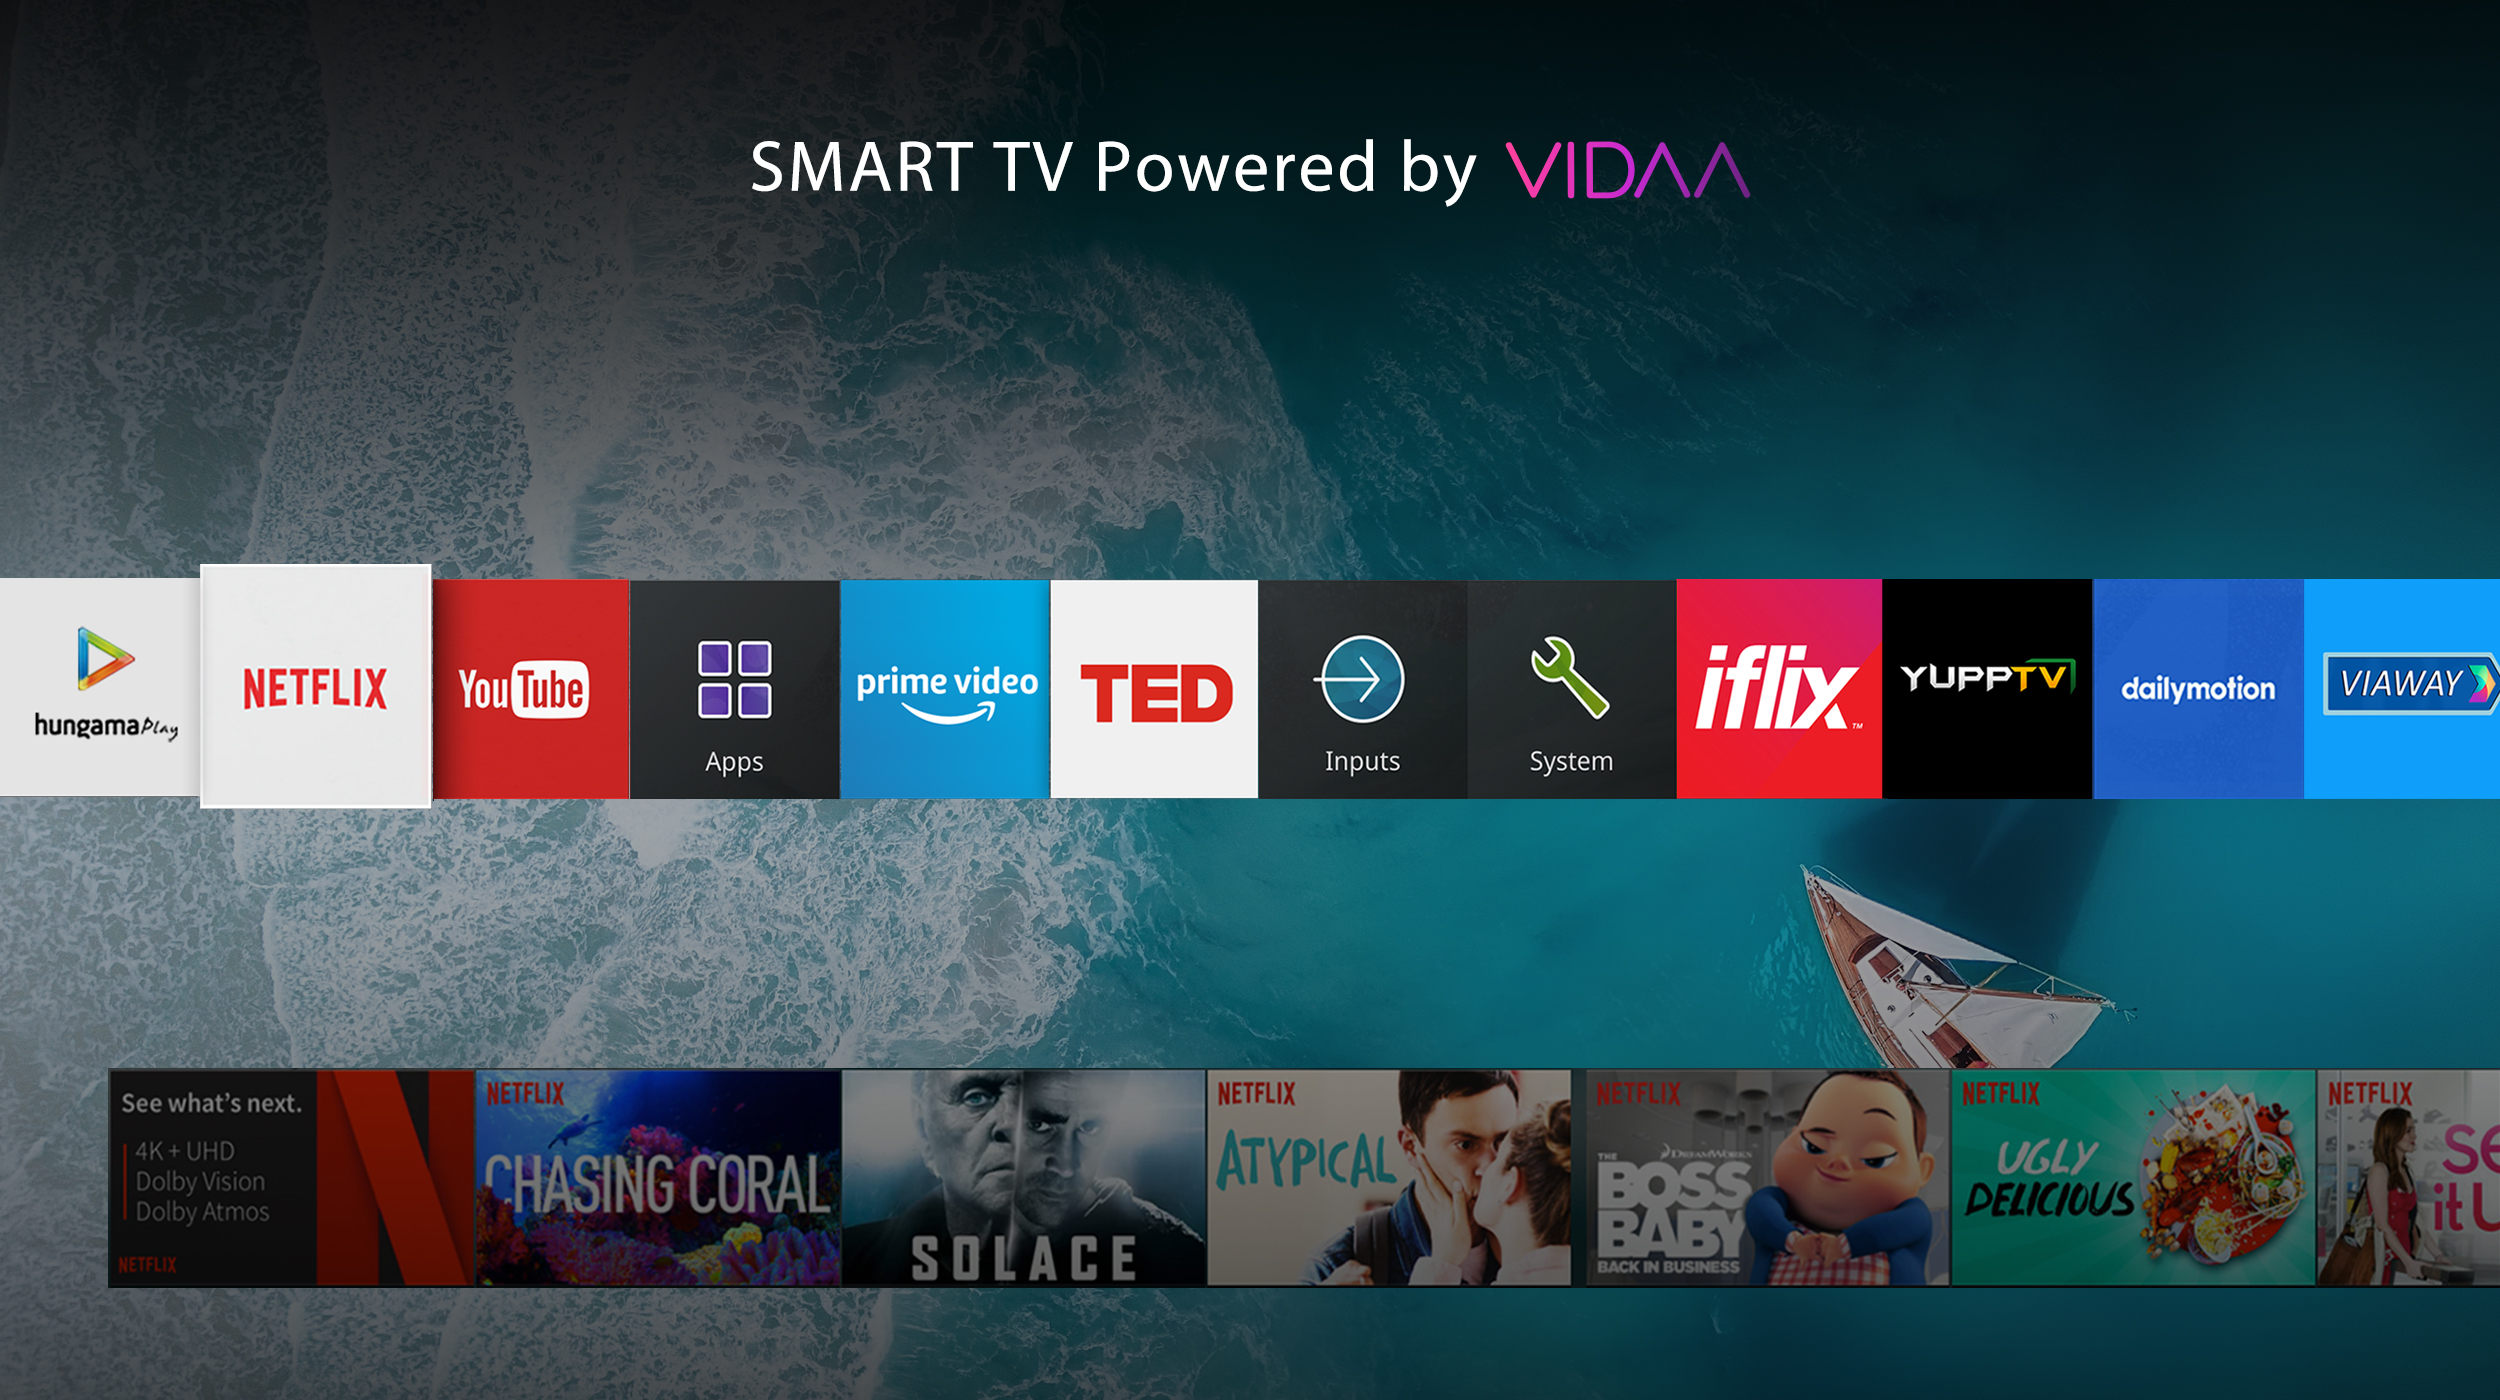 Toshiba Smart HD TV Powered by VIDAA